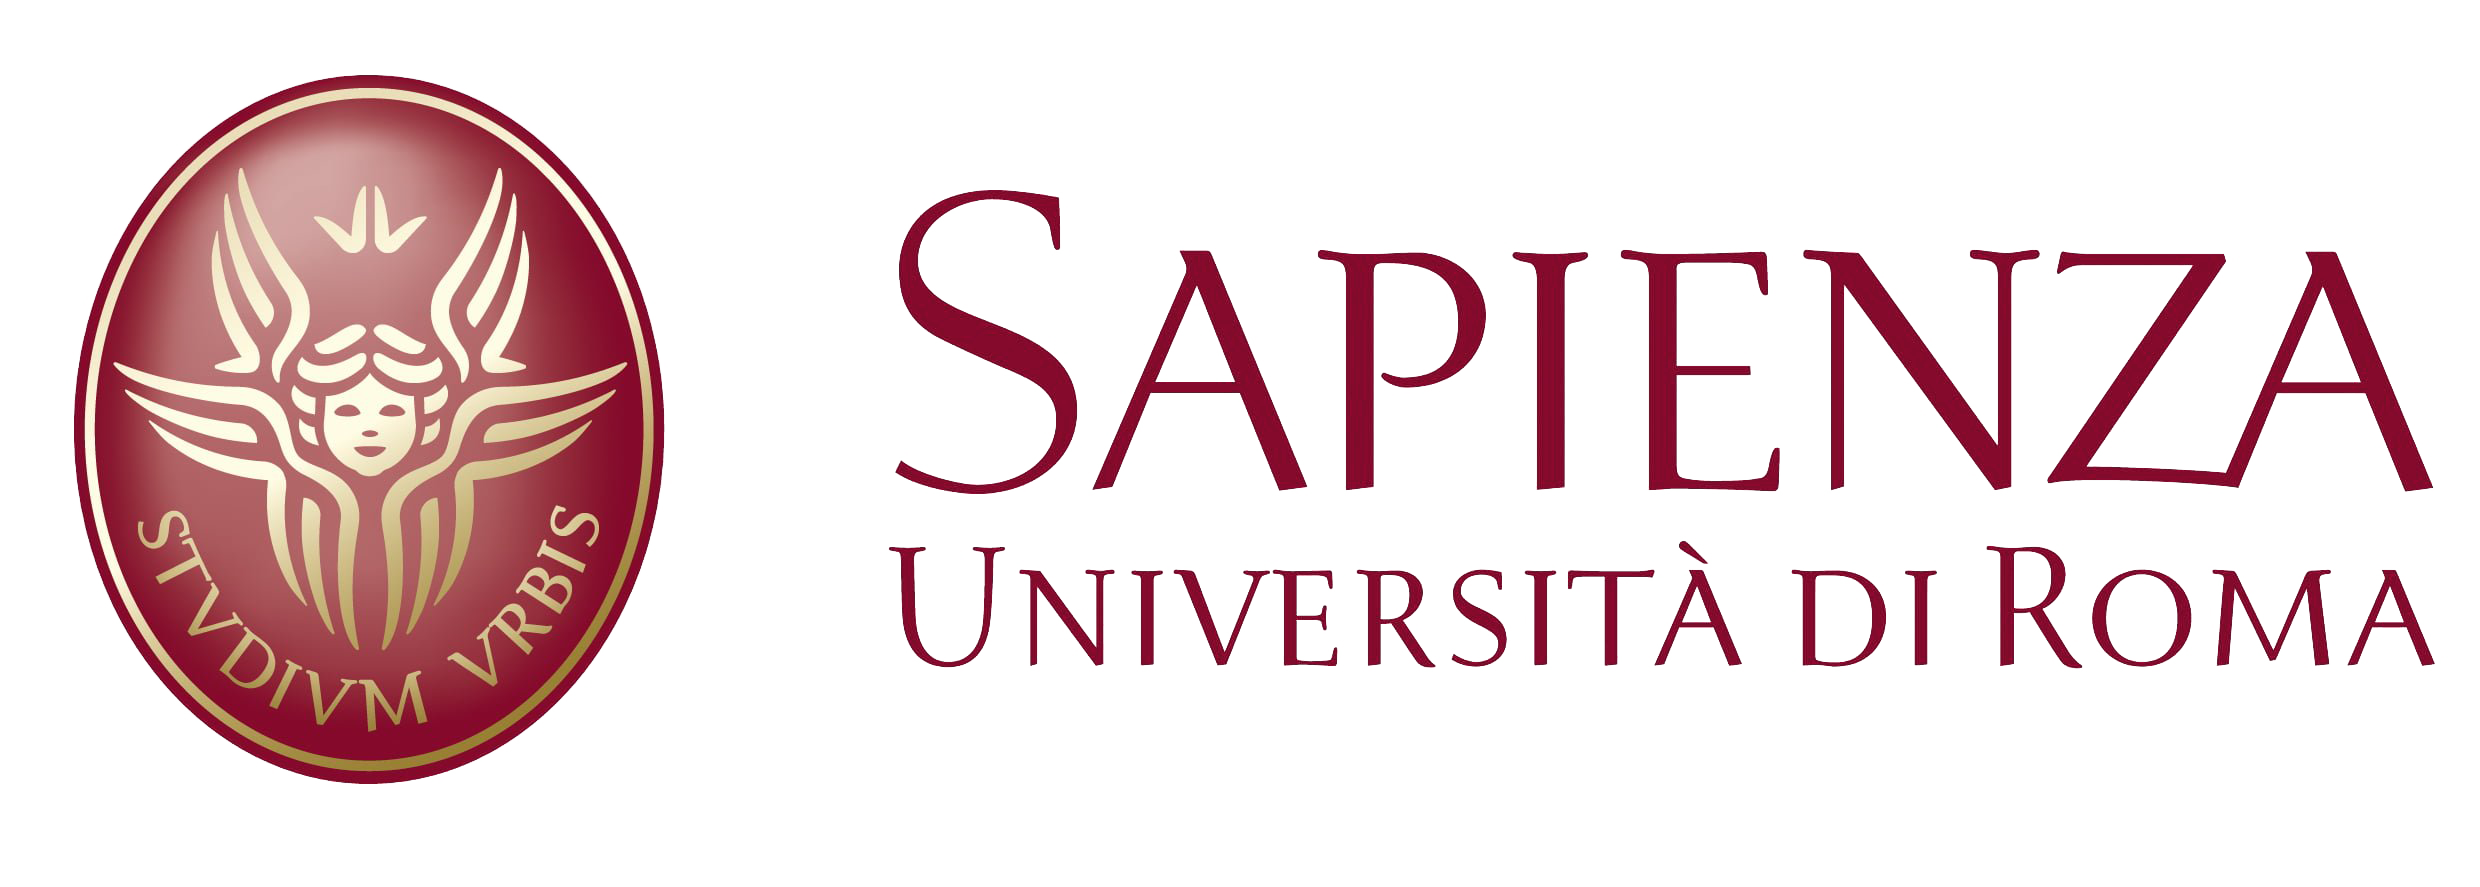 La-Sapienza-logo-formazione